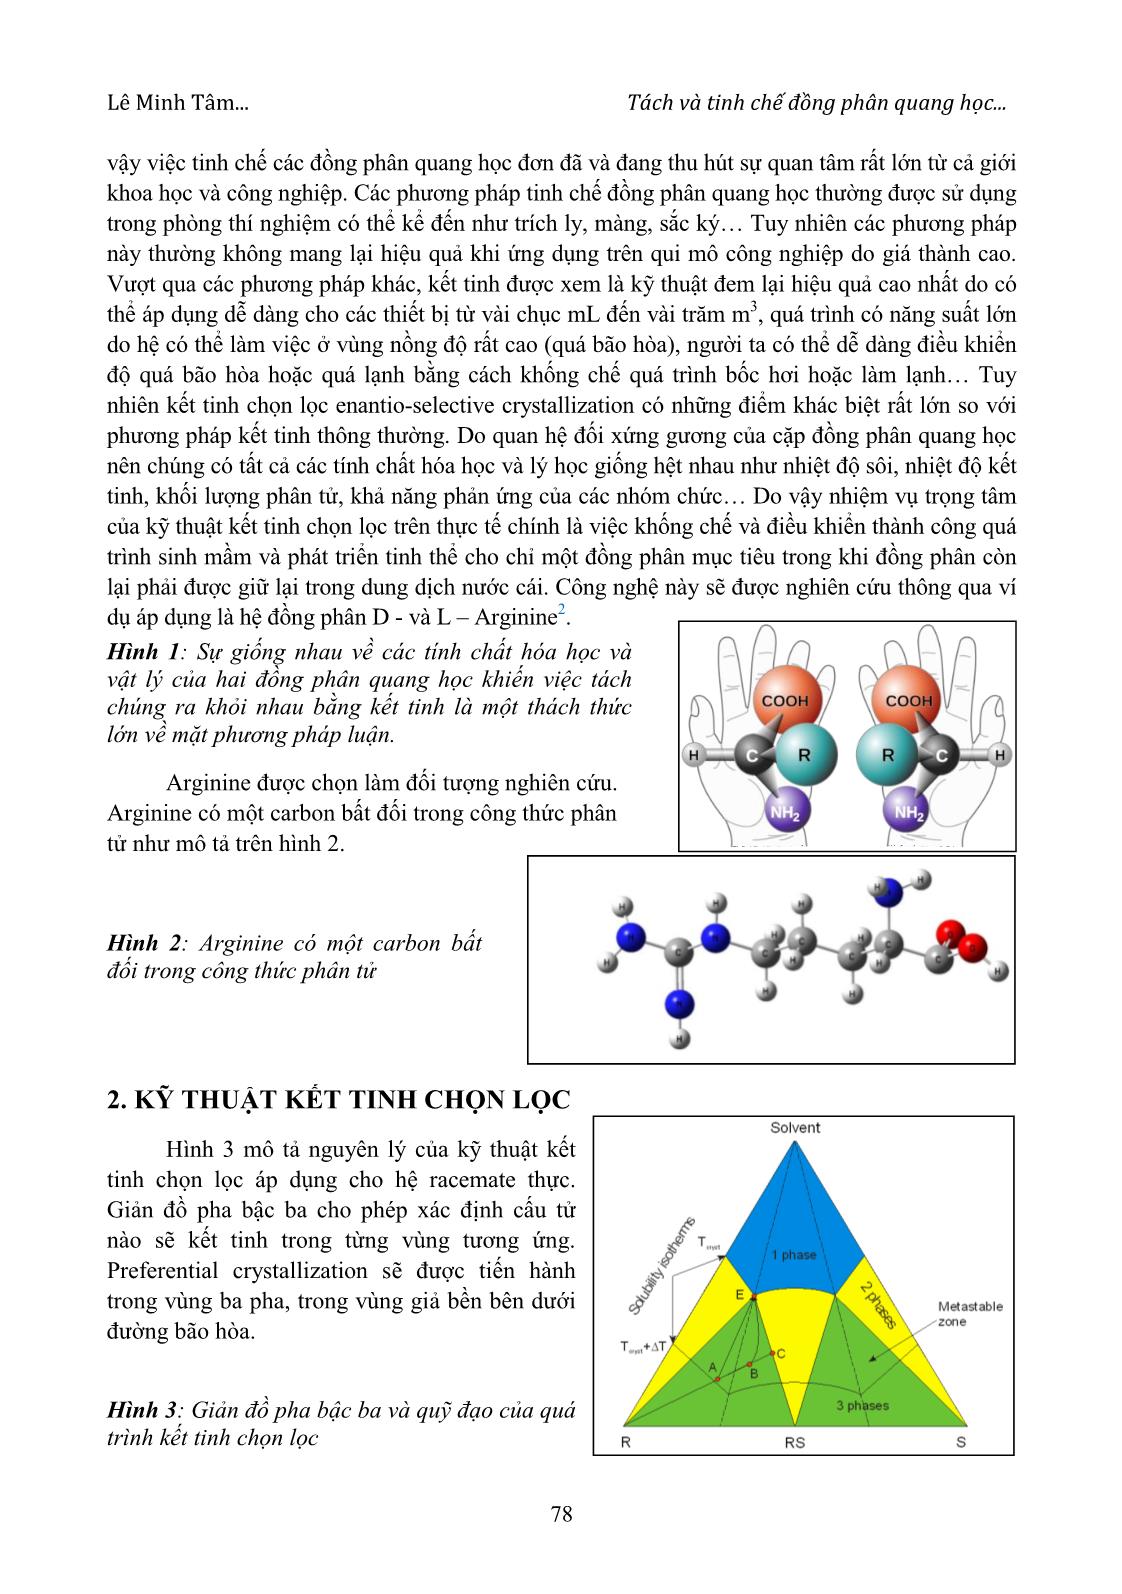 Tách và tinh chế đồng phân quang học bằng phương pháp kết tinh chọn lọc Enantioselective Crystallization - Trường hợp áp dụng cho hệ Amino Axít trang 2